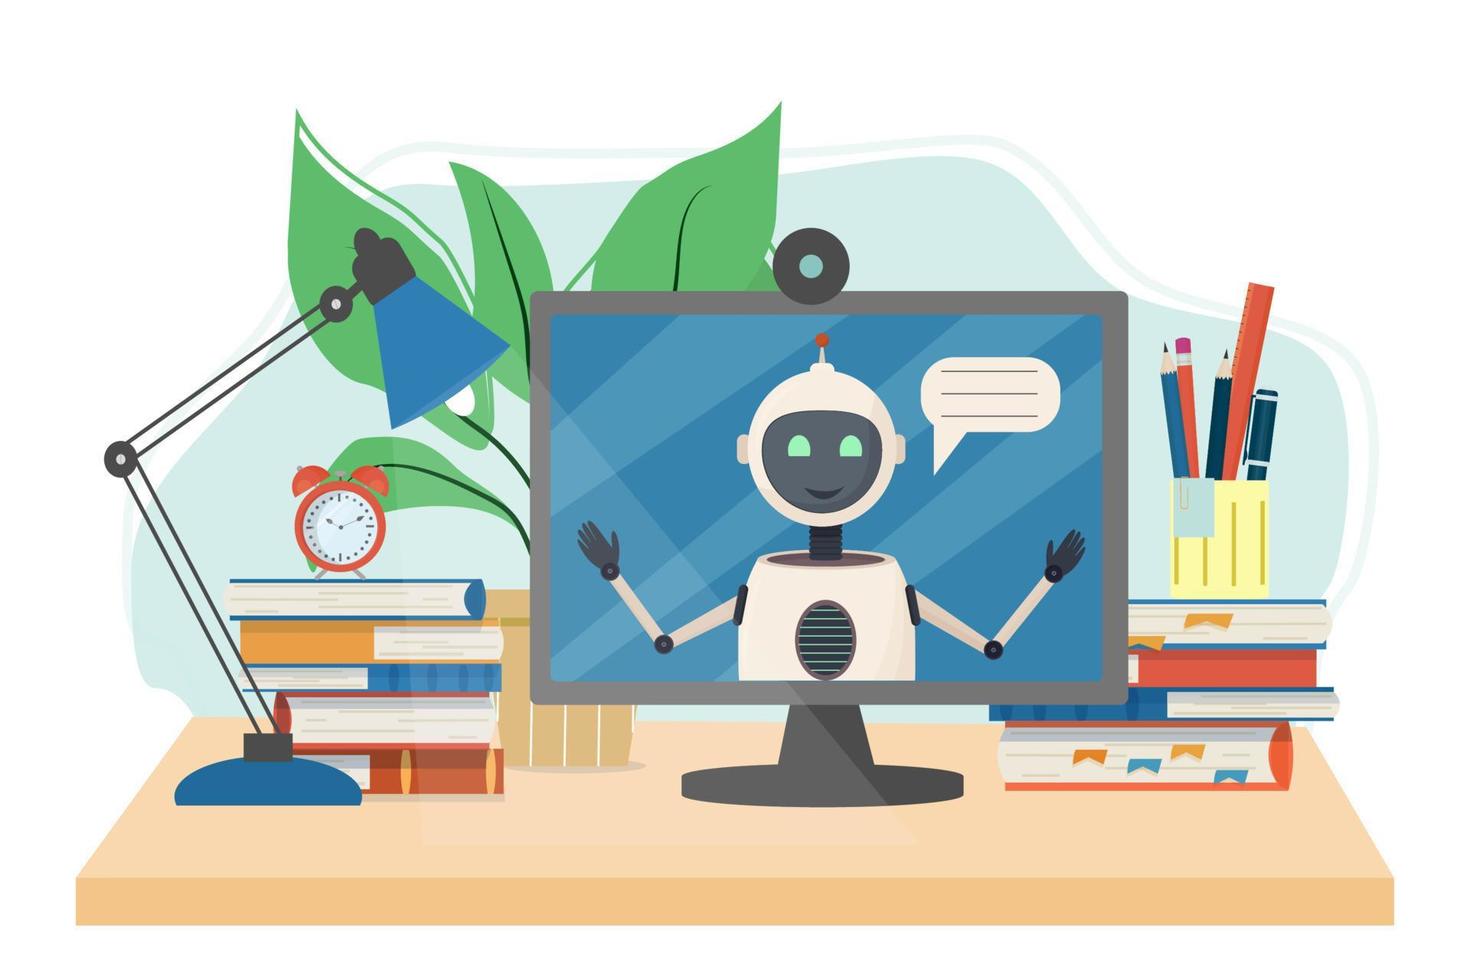 Arbeitsplatz für Online-Kurse, E-Learning, Bildung mit Büchern, Alarm, Monitor mit Roboter isoliert auf weißem Hintergrund Stock Vector Illustration. Studienkonzept im flachen Stil.